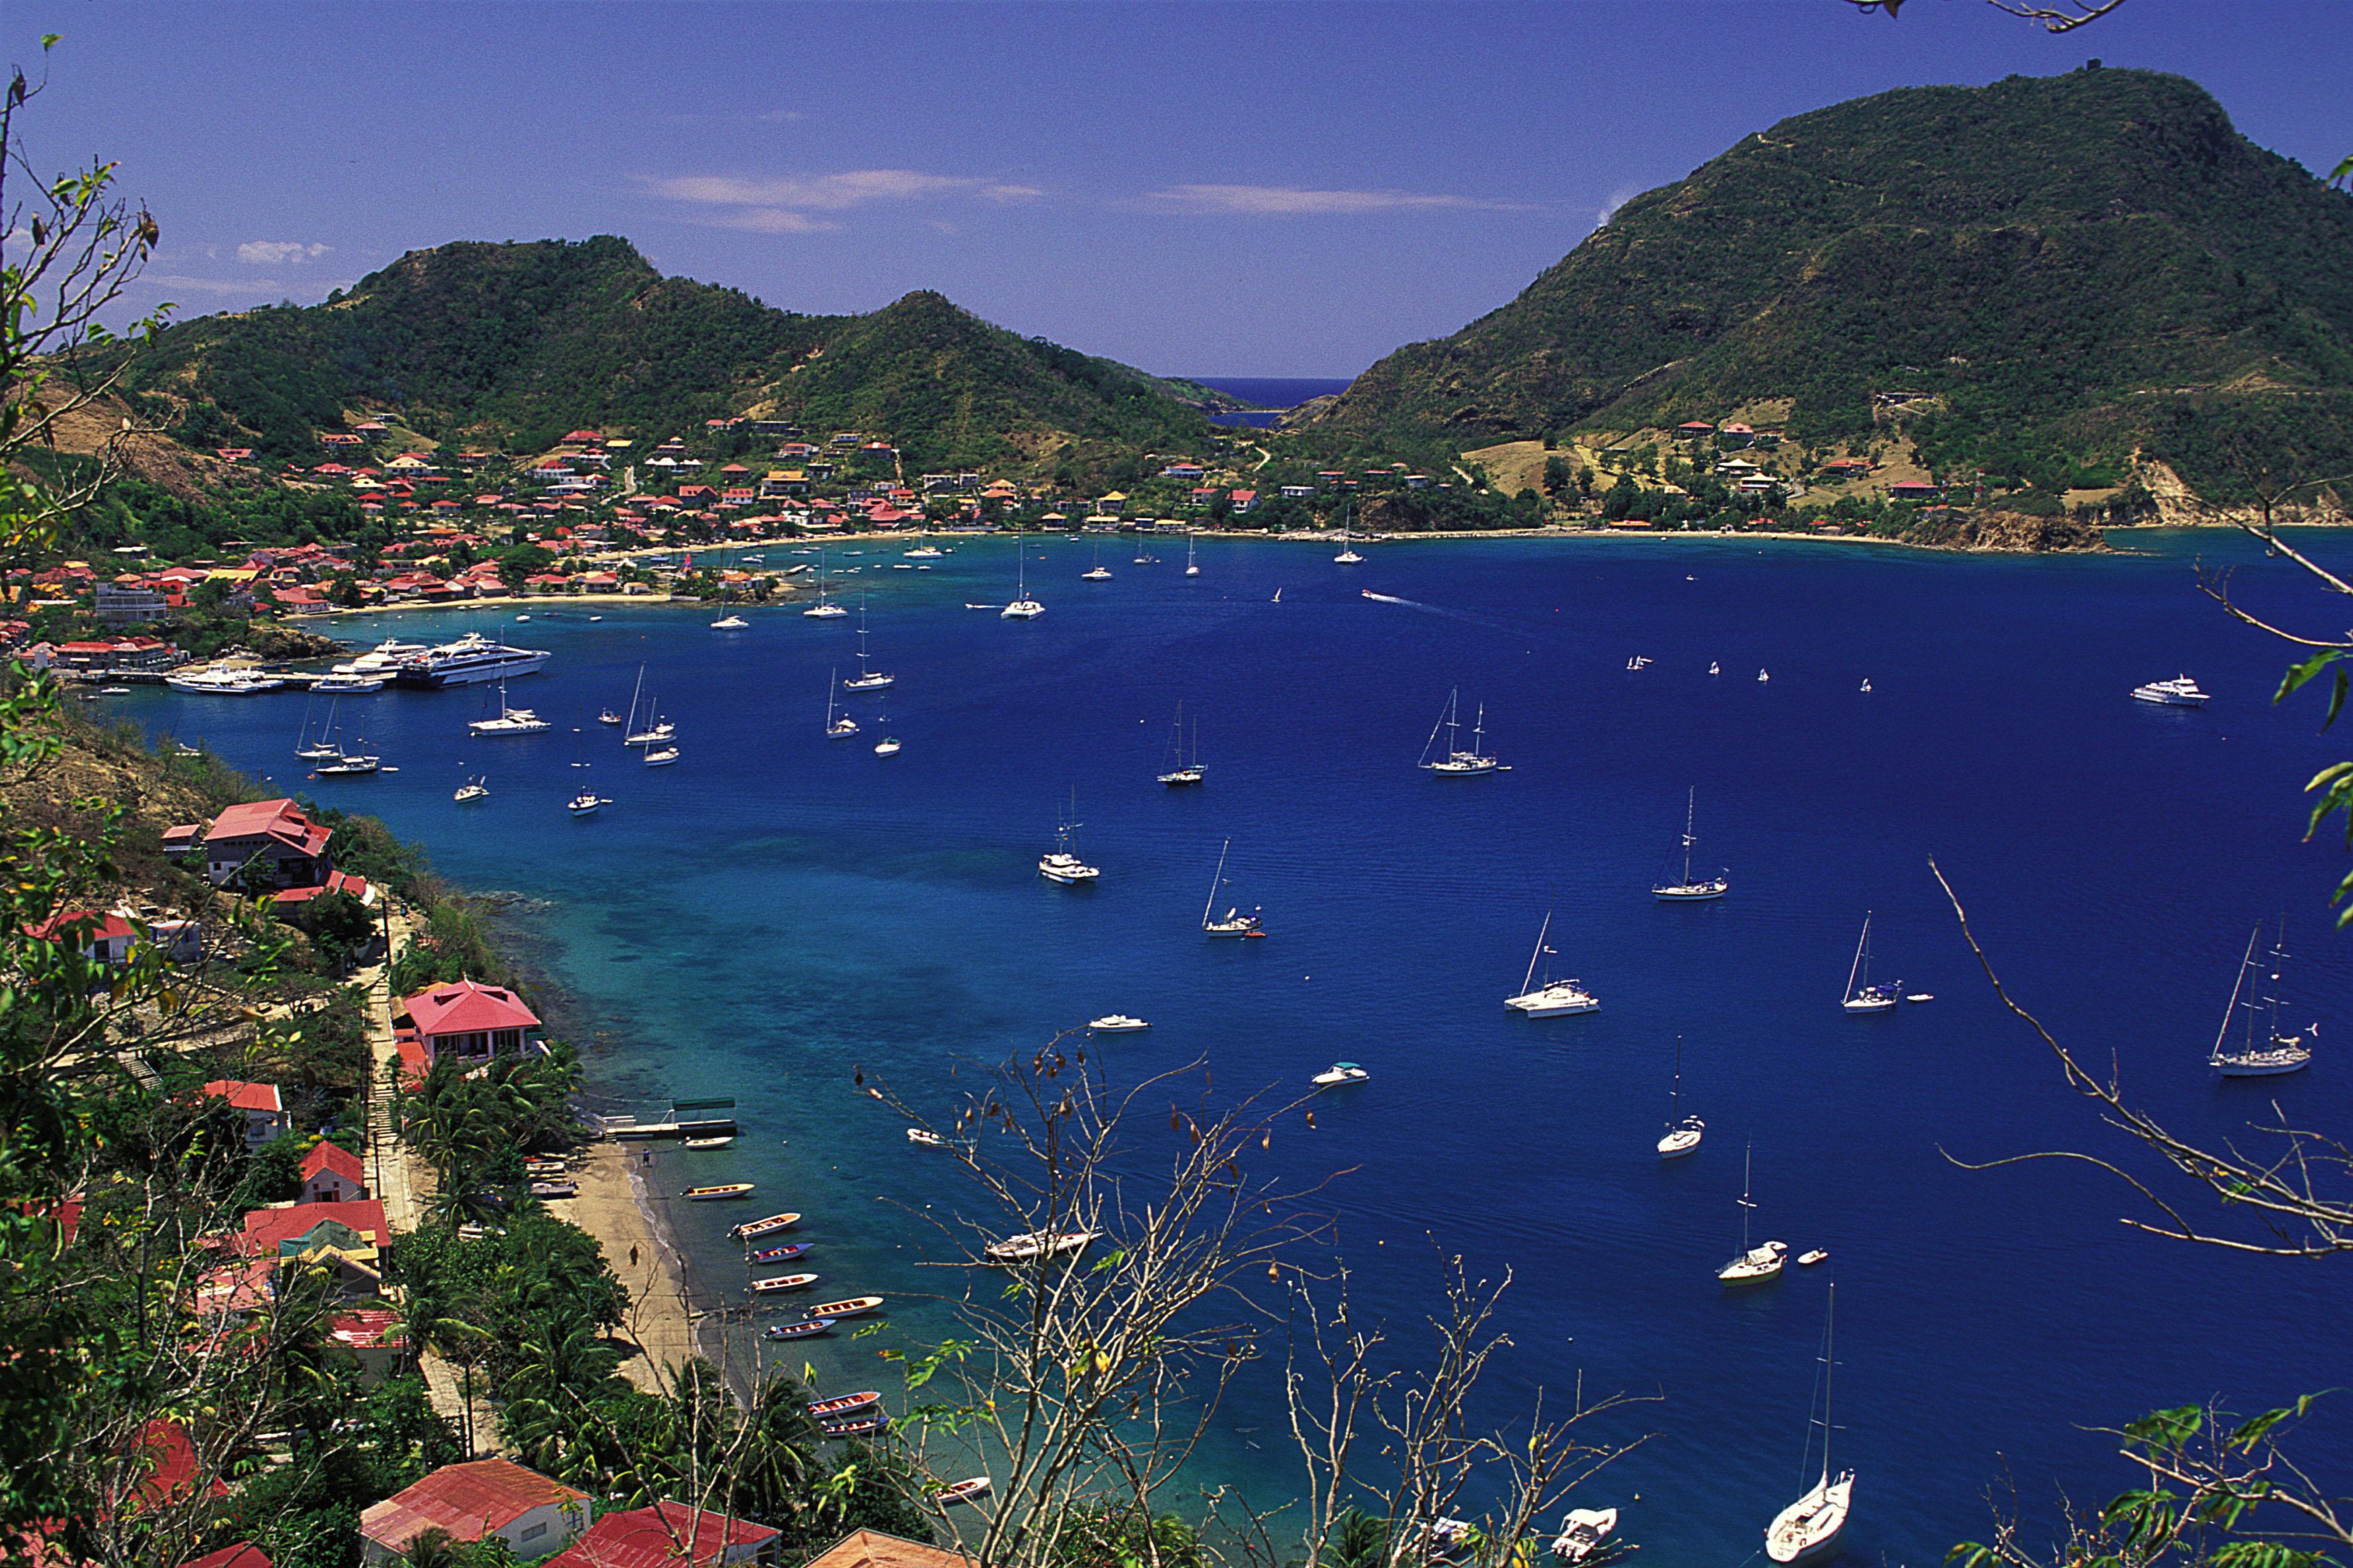 Tourisme: 58% de fréquentation de plus en Guadeloupe entre 2011 et 2015